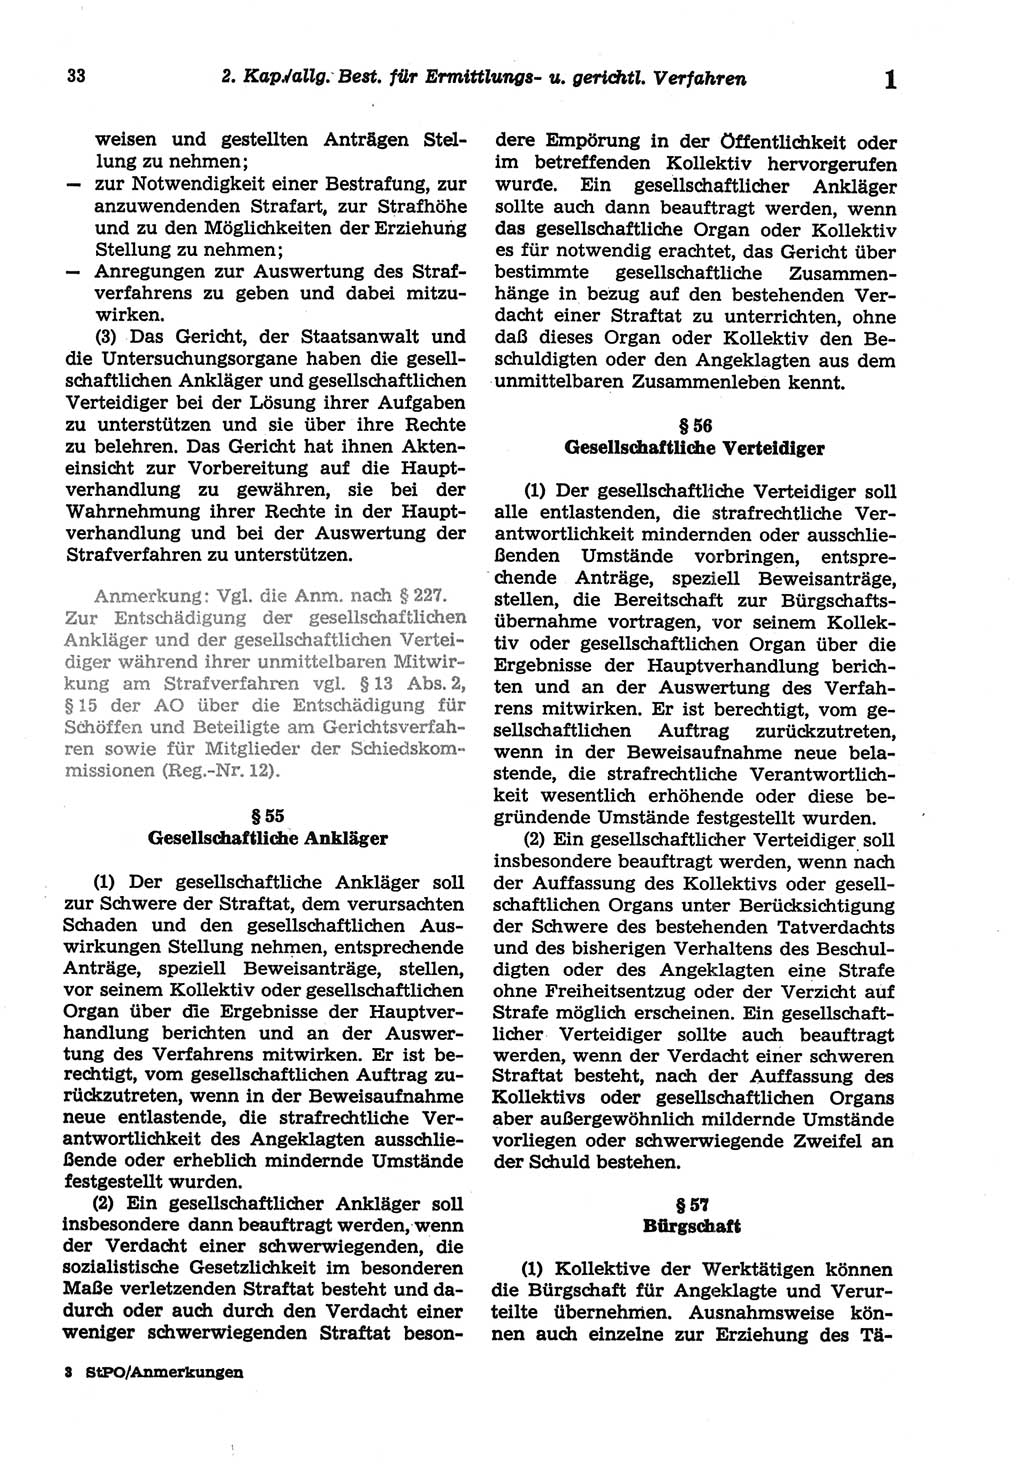 Strafprozeßordnung (StPO) der Deutschen Demokratischen Republik (DDR) sowie angrenzende Gesetze und Bestimmungen 1977, Seite 33 (StPO DDR Ges. Best. 1977, S. 33)